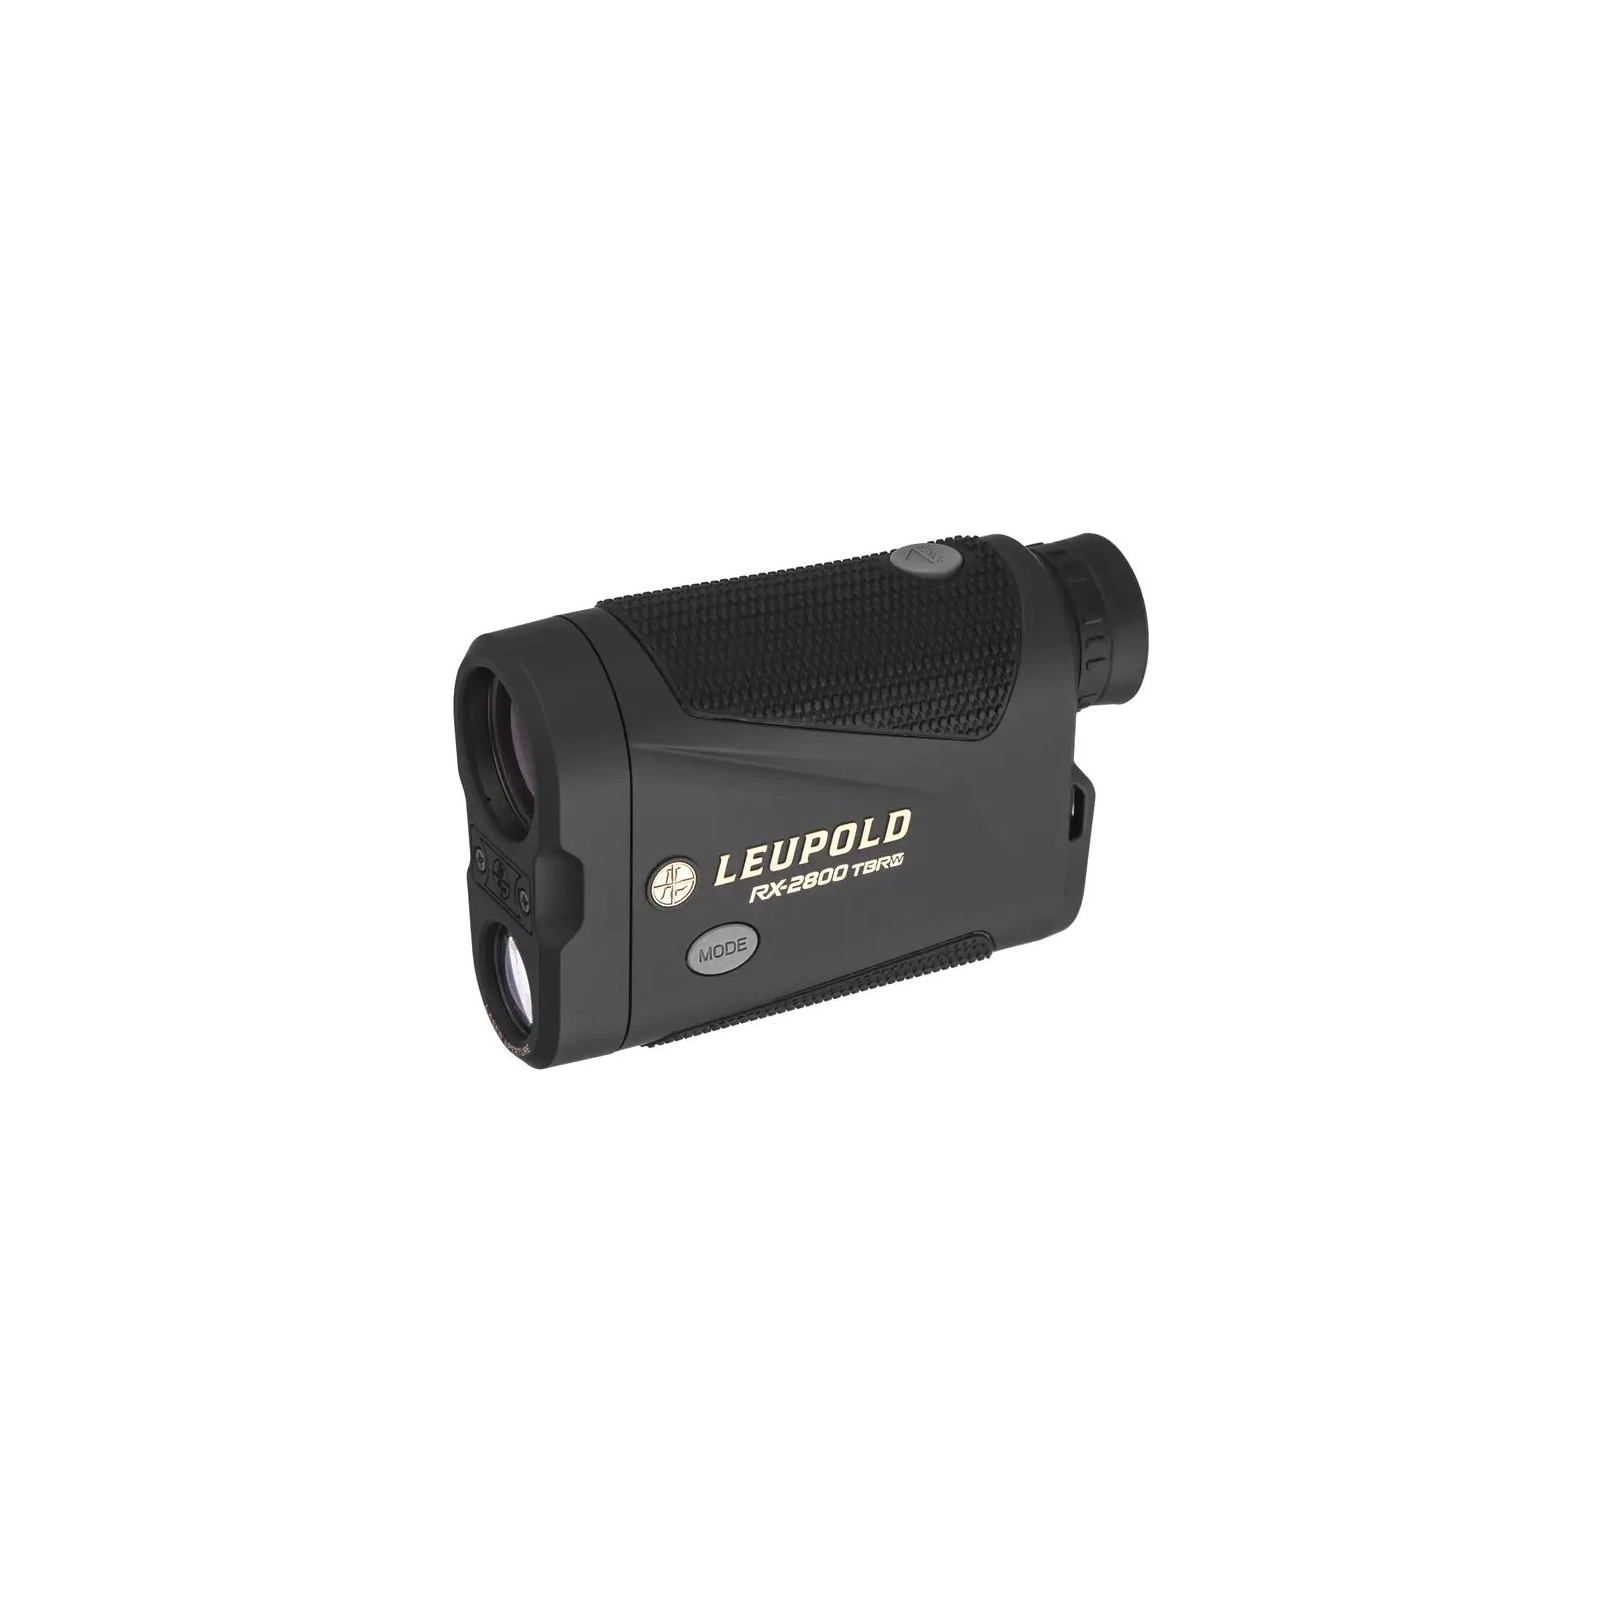 Лазерний далекомір Leupold RX-2800 TBR/W Laser Rangefinder Black/Gray OLED Selectable (171910)